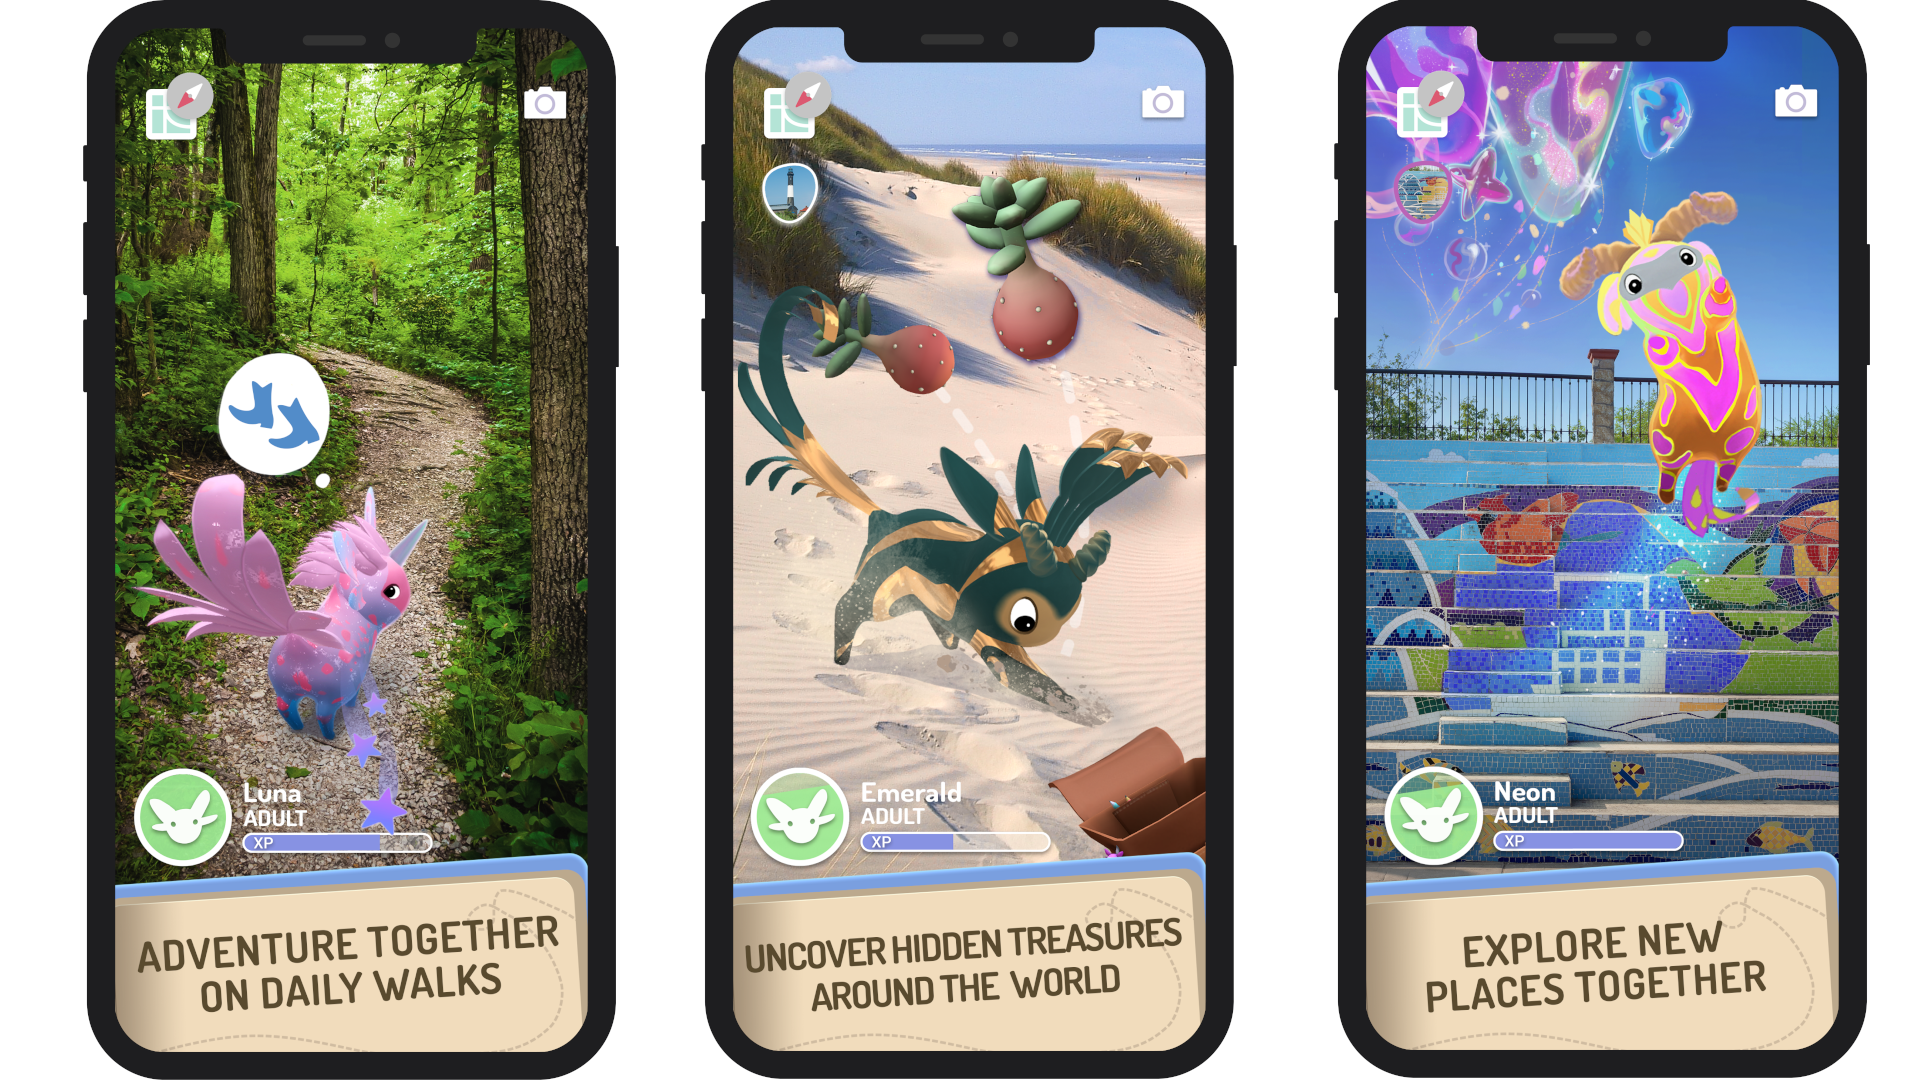 Capturas de pantalla móviles que muestran las actividades de los jugadores con Peridots, incluidas las caminatas diarias, la búsqueda de tesoros y la exploración de nuevos lugares